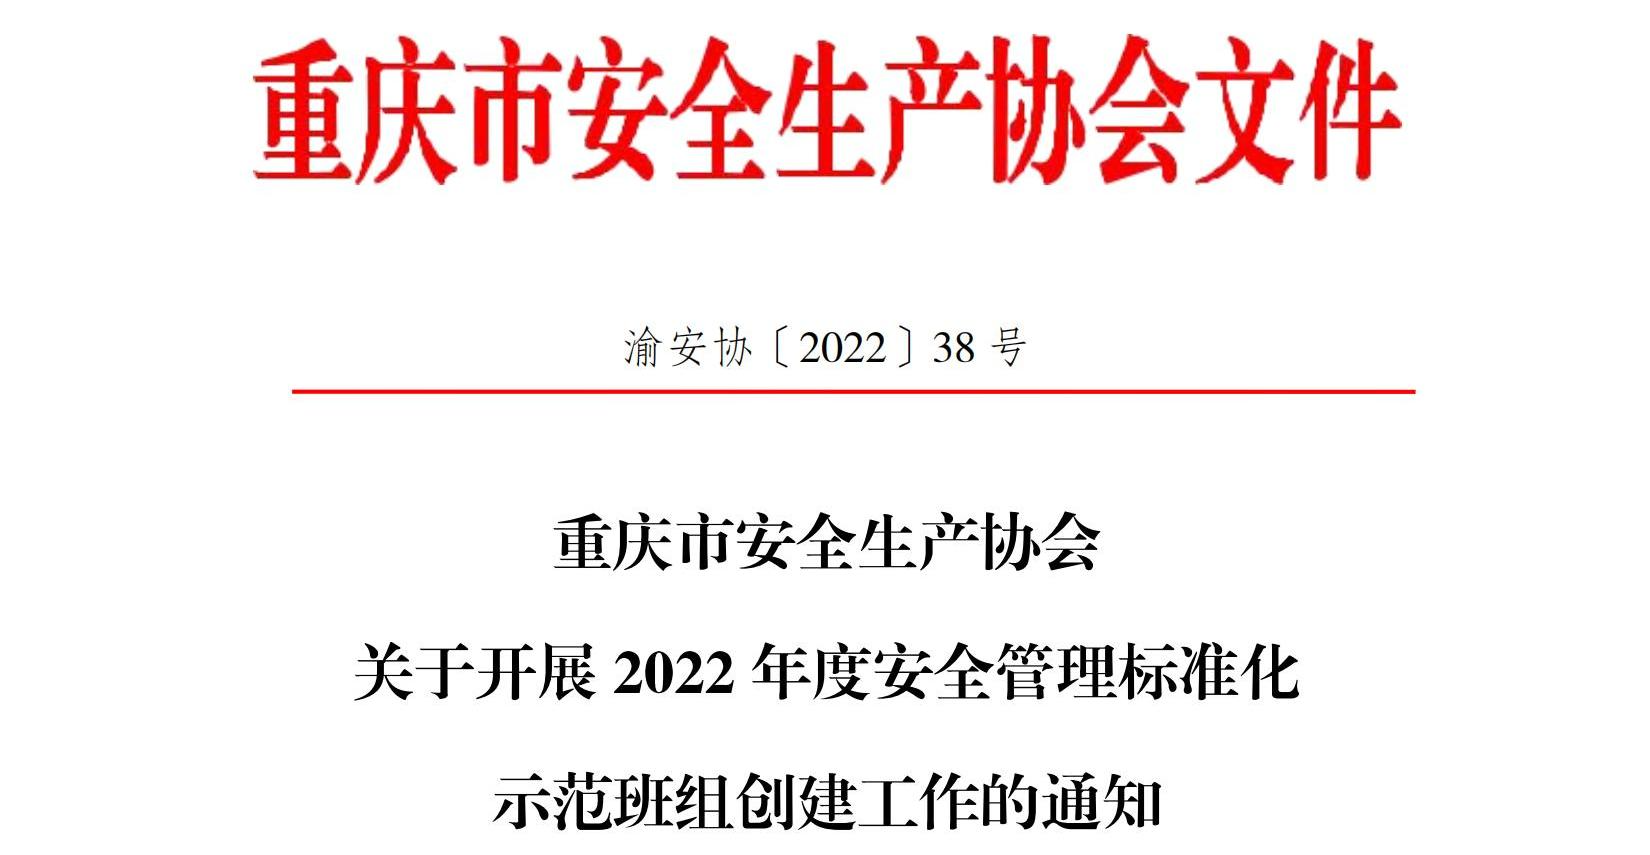 重庆市安全生产协会关于开展安全管理示范班组活动的通知_00(1).png